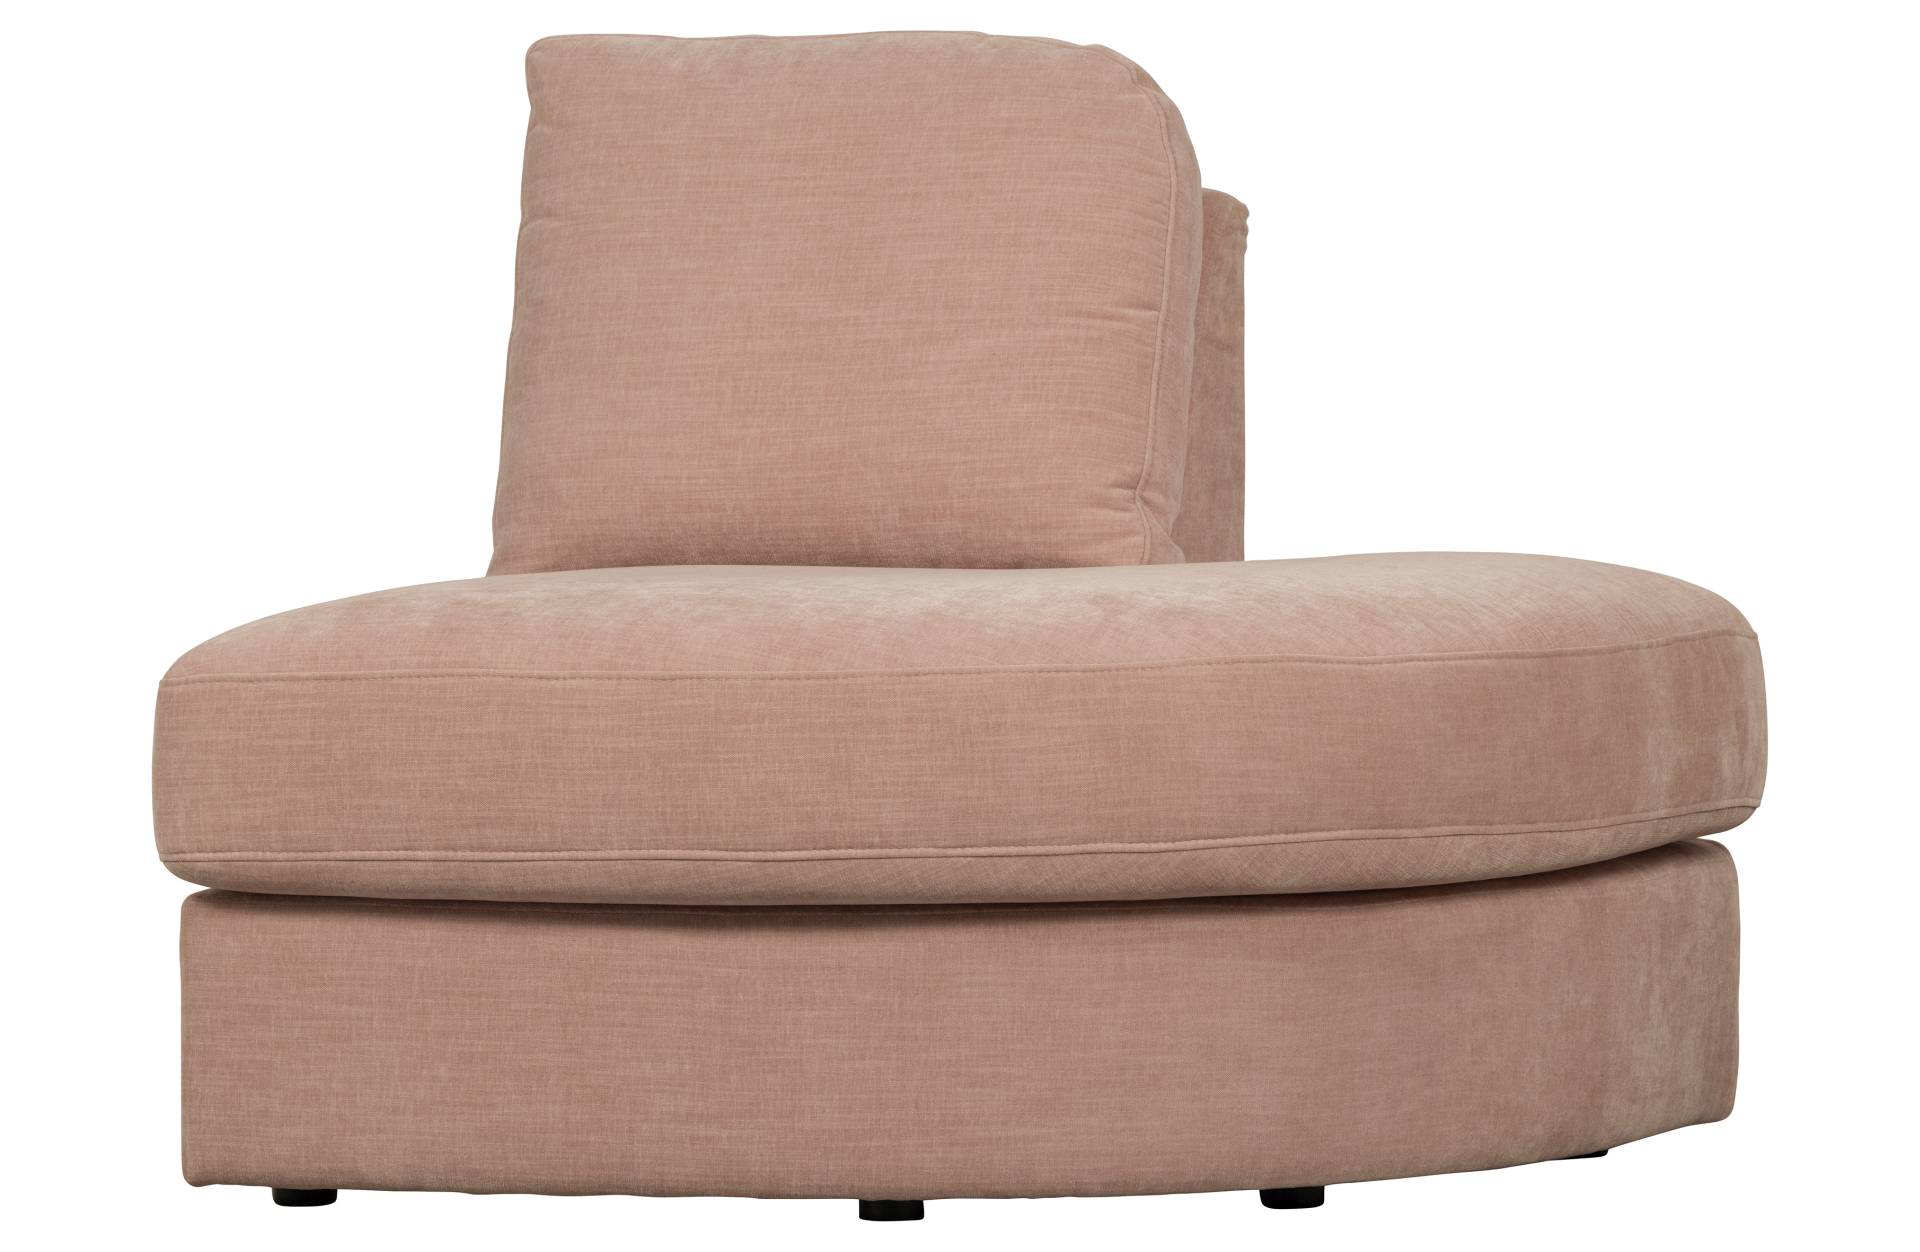 Das Modulsofa Family überzeugt mit seinem modernen Design. Das 1-Seat Eck Element mit der Ausführung Rechts wurde aus Gewebe-Stoff gefertigt, welcher einen einen rosa Farbton besitzen. Das Gestell ist aus Metall und hat eine schwarze Farbe. Das Element ha